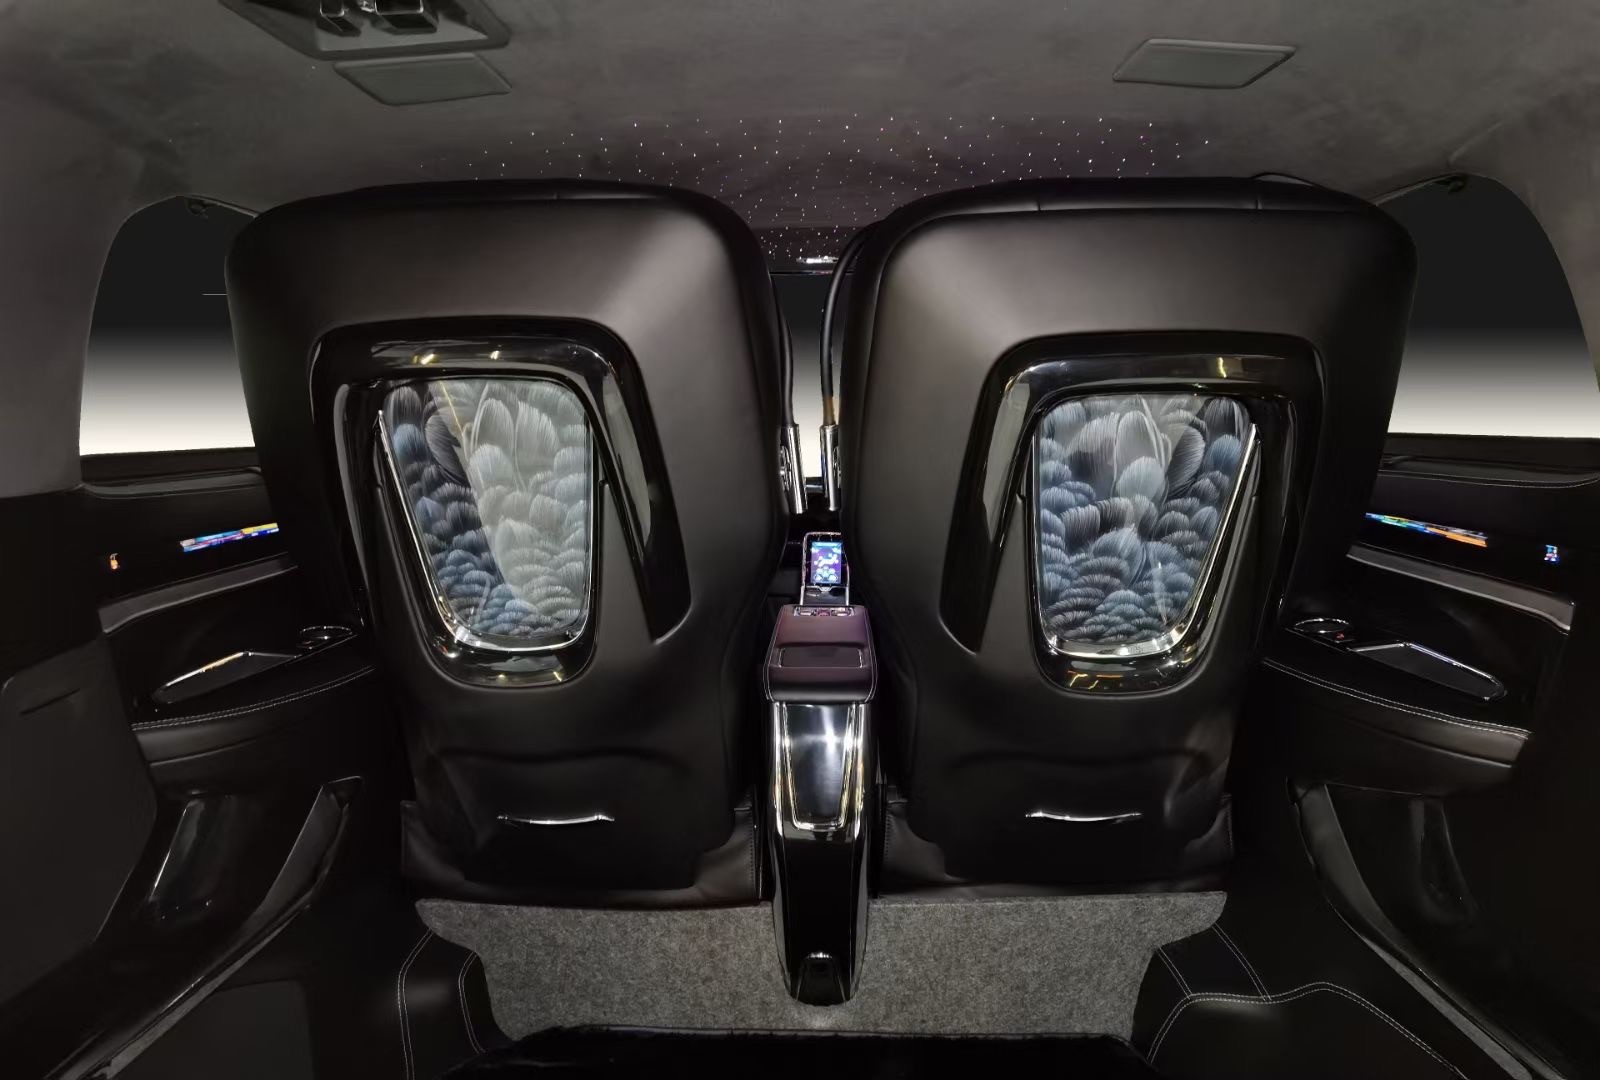 2020款埃尔法蒙娜丽莎黑天鹅人体工学设计的奢华原装进口一键式记忆电动折叠航空首长席支持加热，通风，气动按摩，靠枕带电动升降，完美满足各种身型的乘坐者在车内惬意身姿。中央扶手控制屏支持无线充电功能，同时还能一键雾化两侧玻璃以及吧台隔屏，打造私密尊享的移动包厢。